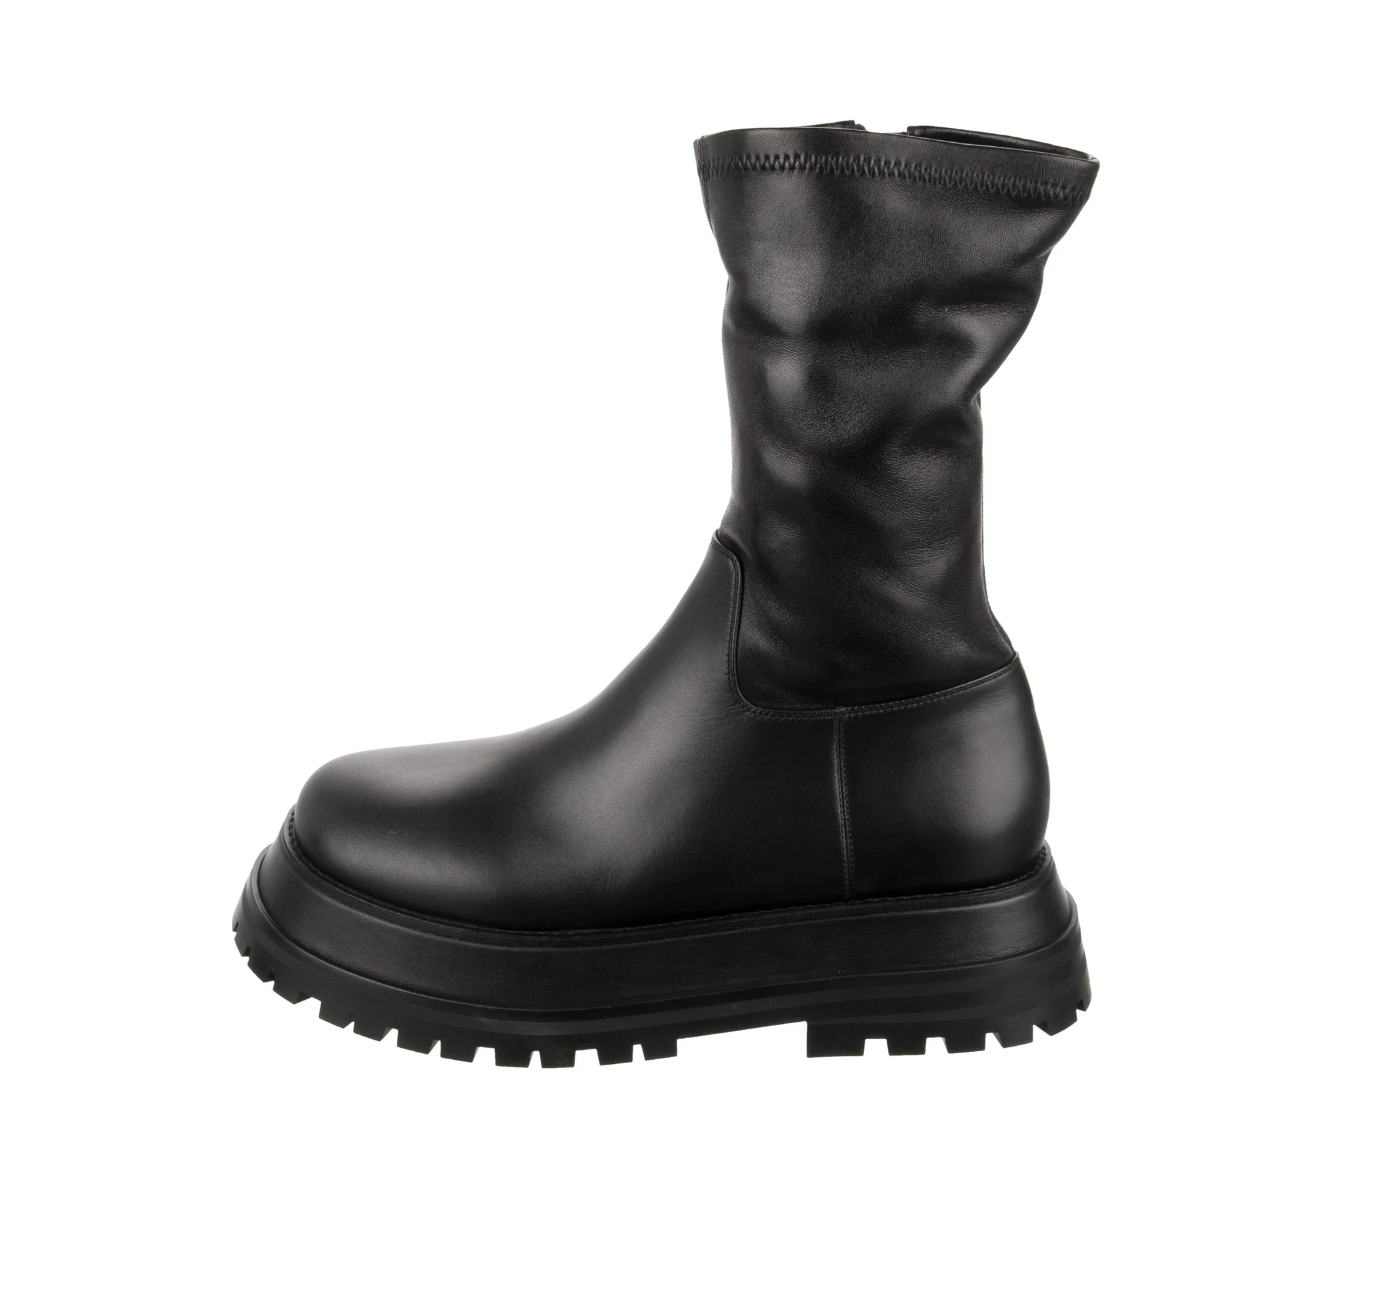 Black Combat Boots - 8.5